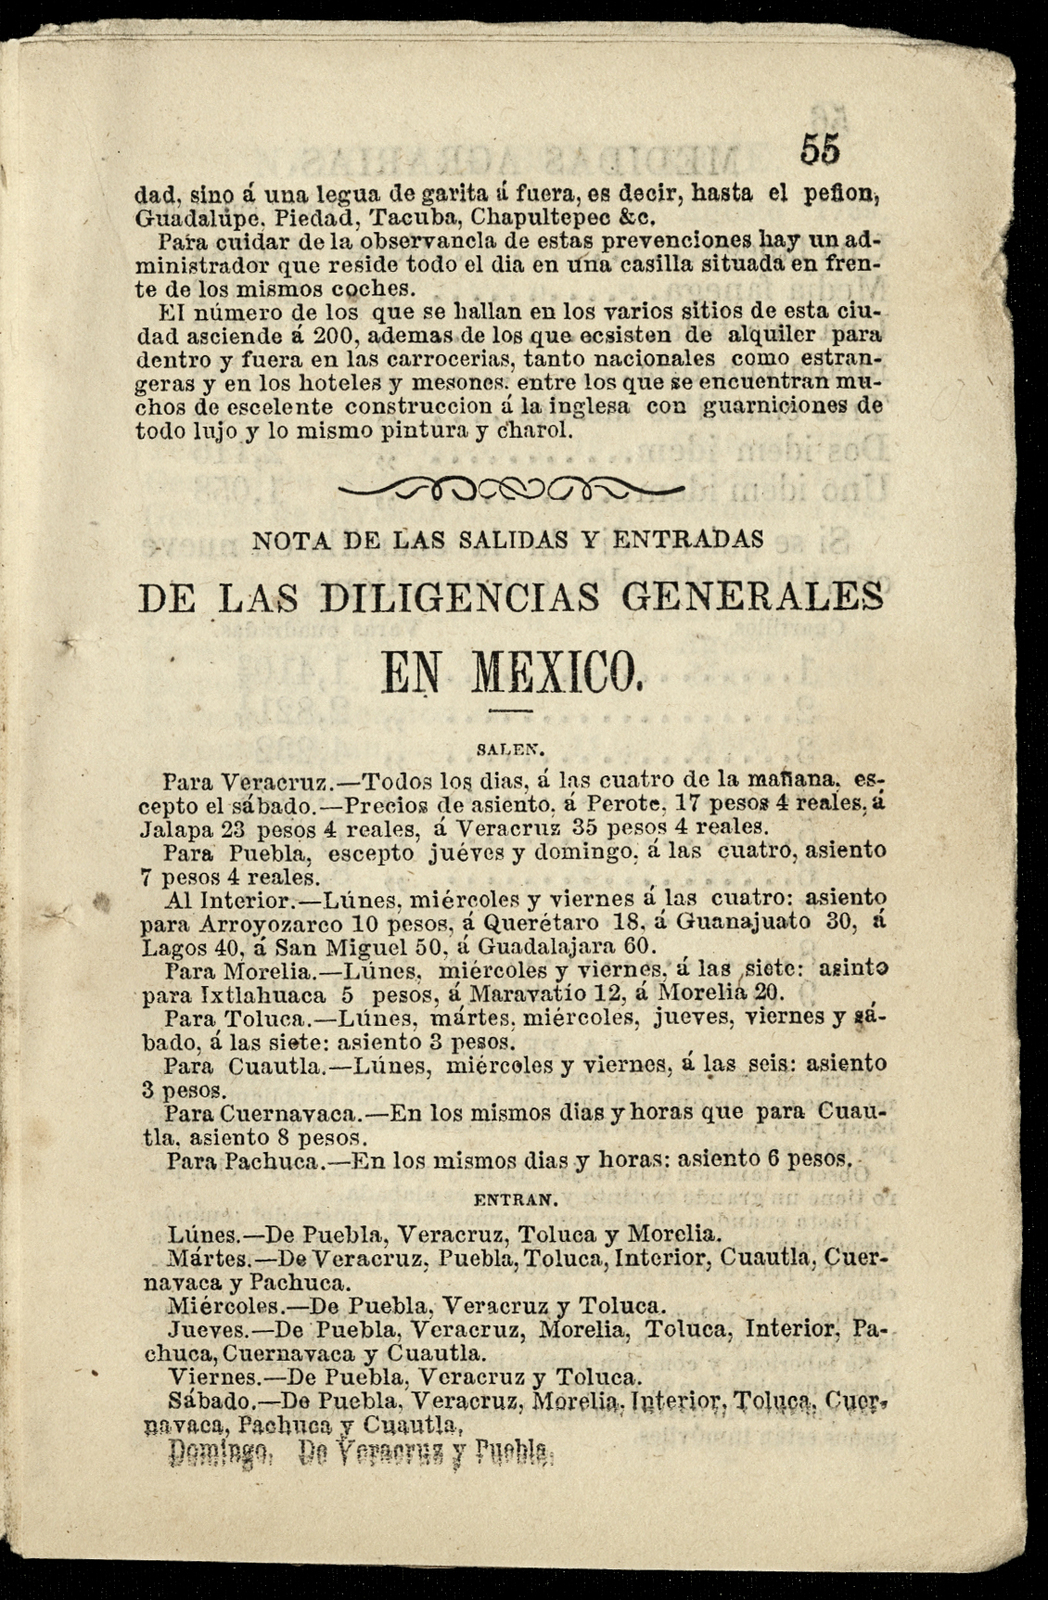 Calendario de M Murguia para el año bisiesto 1852.